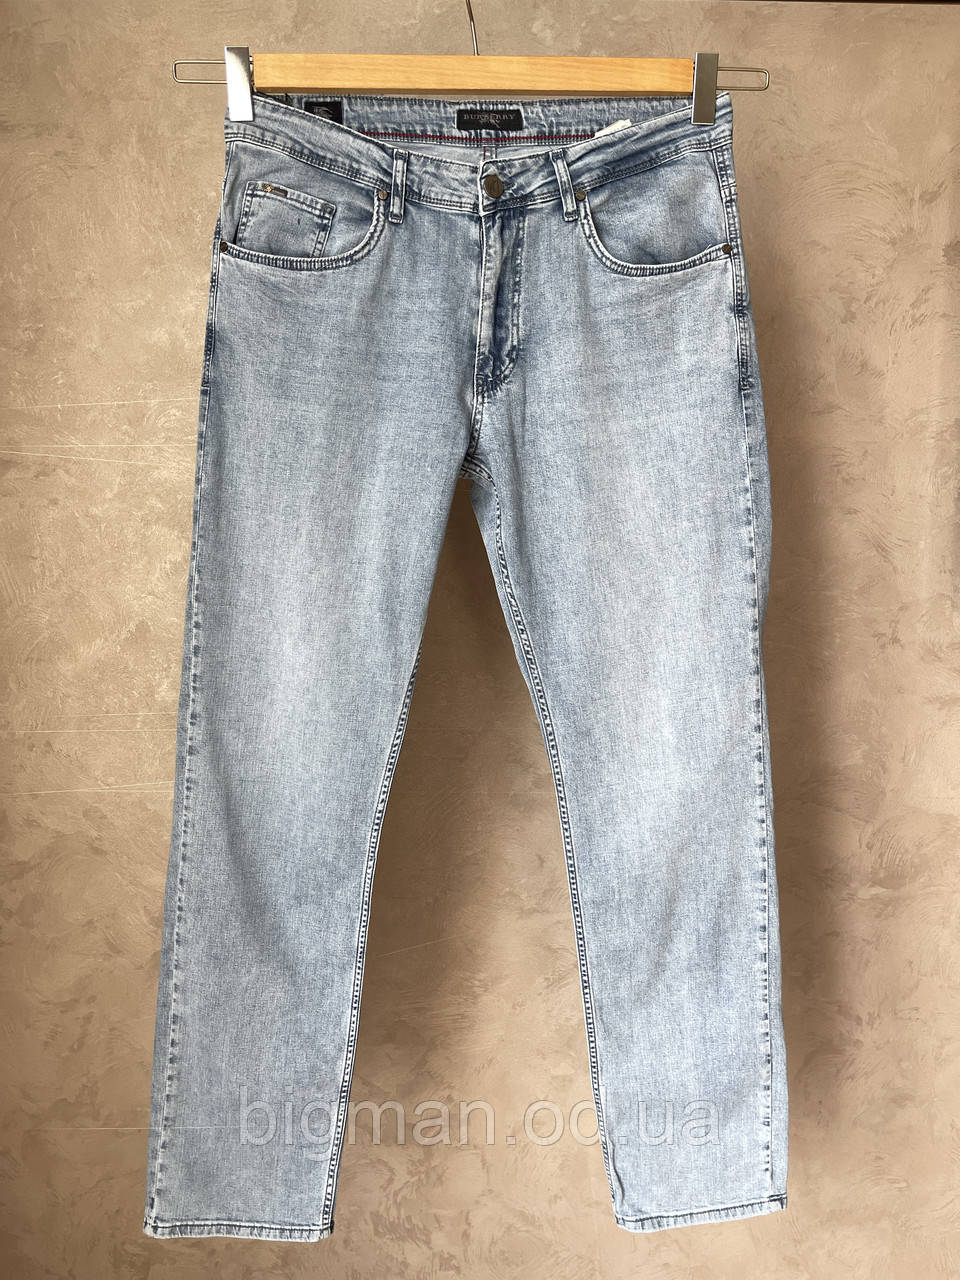 Чоловічі джинси на ремені Grand la Vita 34 розміру великого батального розміру Туреччина, фото 1